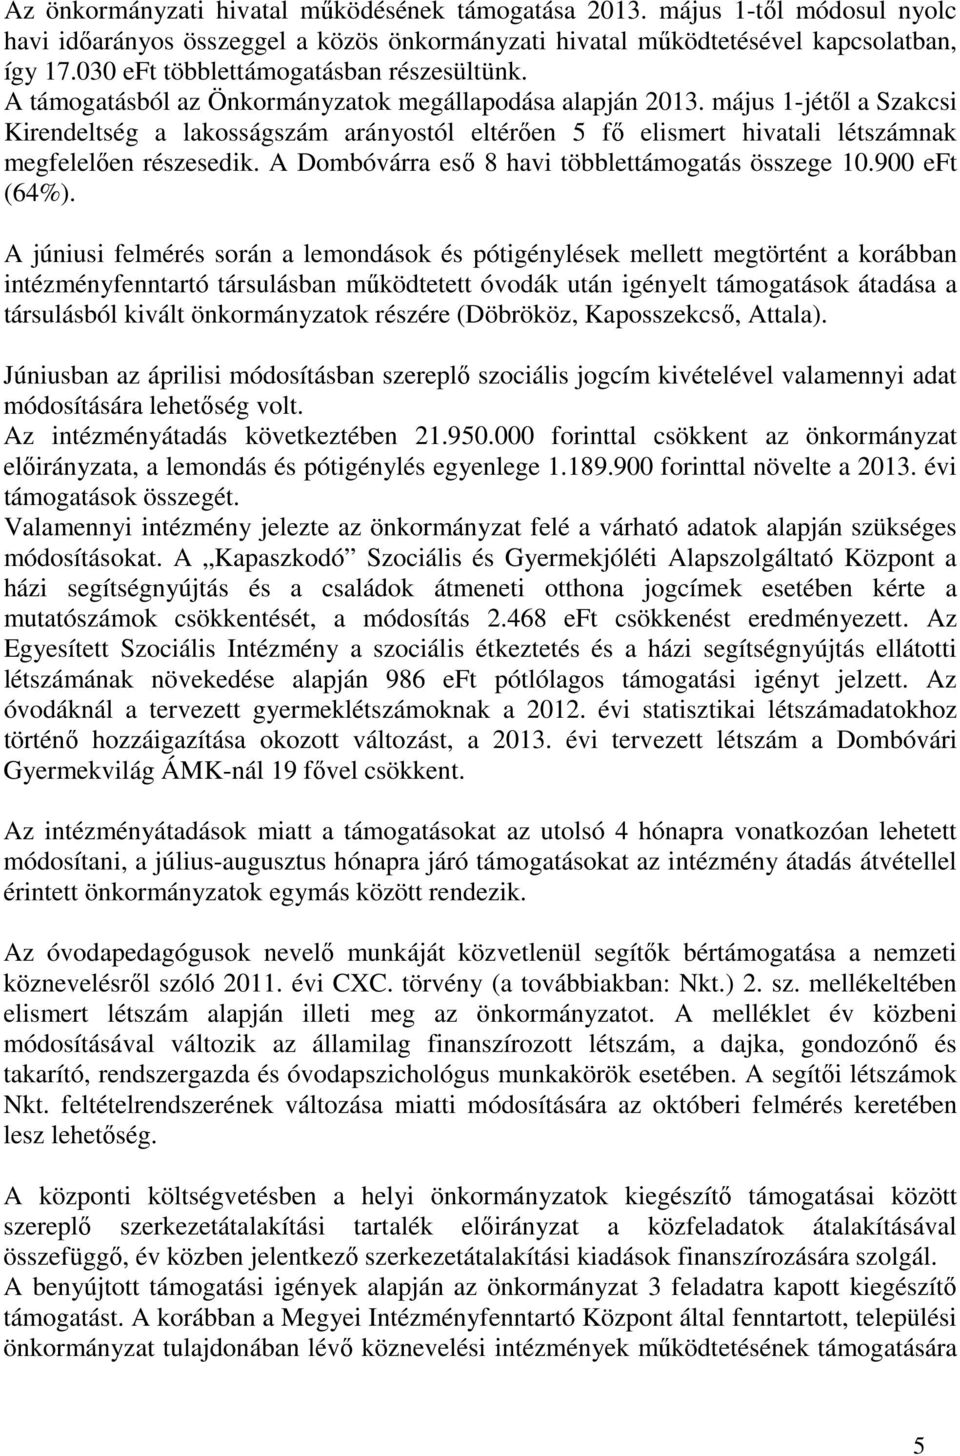 május 1-jétől a Szakcsi Kirendeltség a lakosságszám arányostól eltérően 5 fő elismert hivatali létszámnak megfelelően részesedik. A Dombóvárra eső 8 havi többlettámogatás összege 10.900 eft (64%).